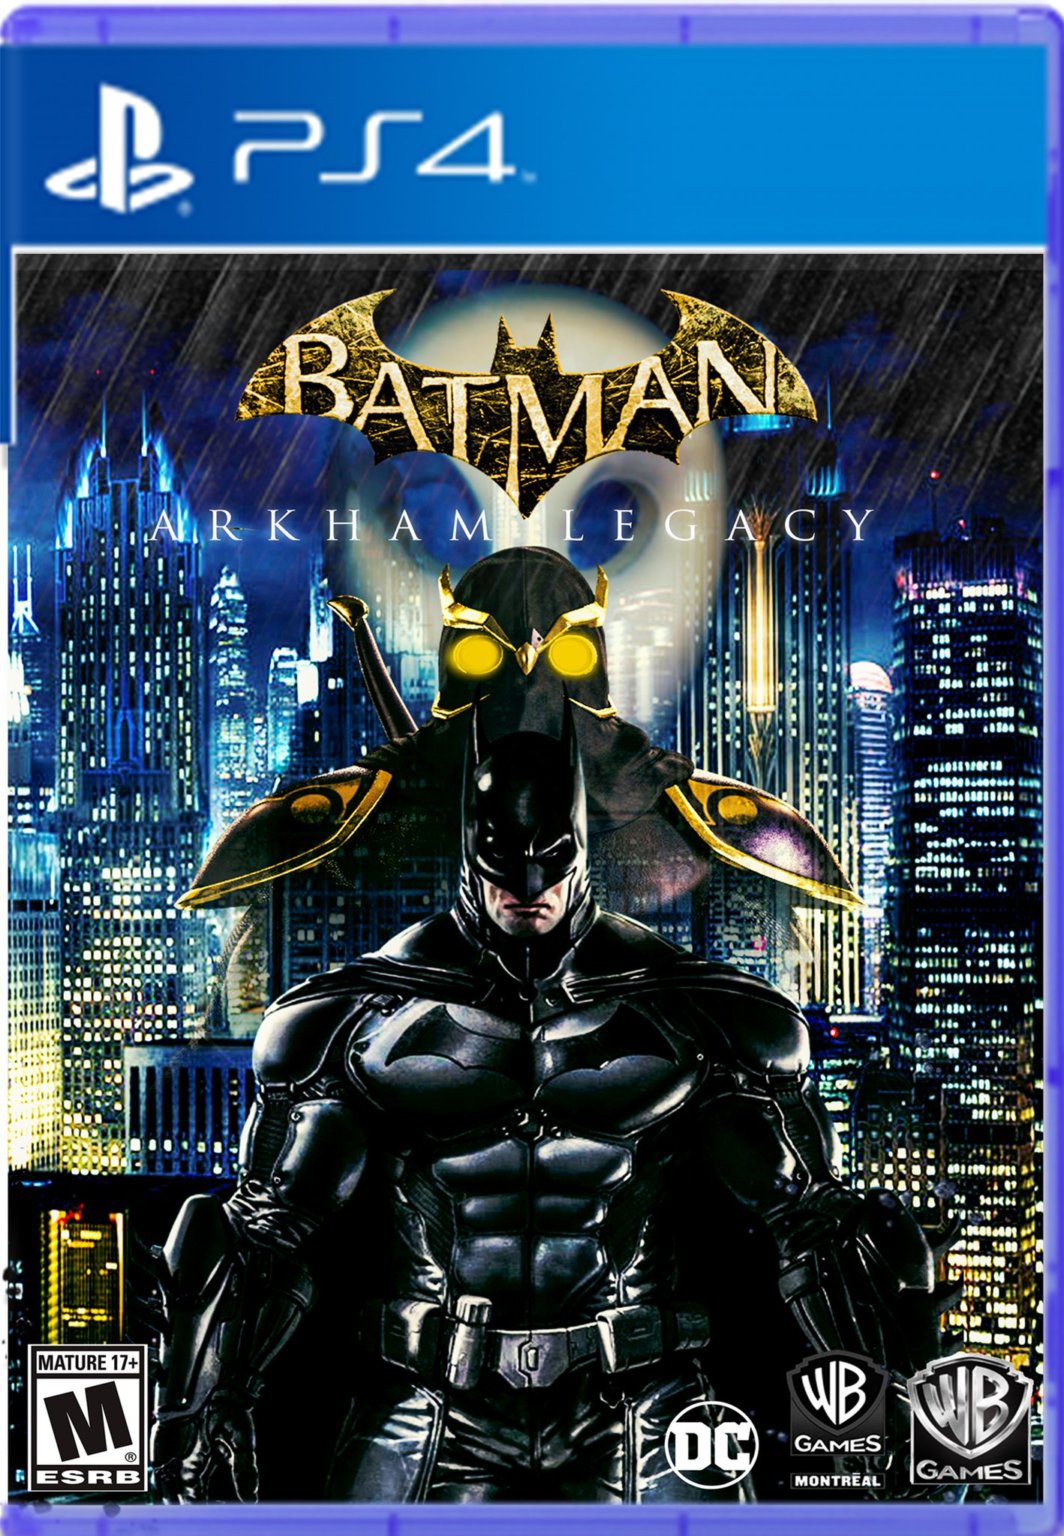 Incroyable Rocksteady dévoile son nouveau jeu "Batman Arkham Legacy"